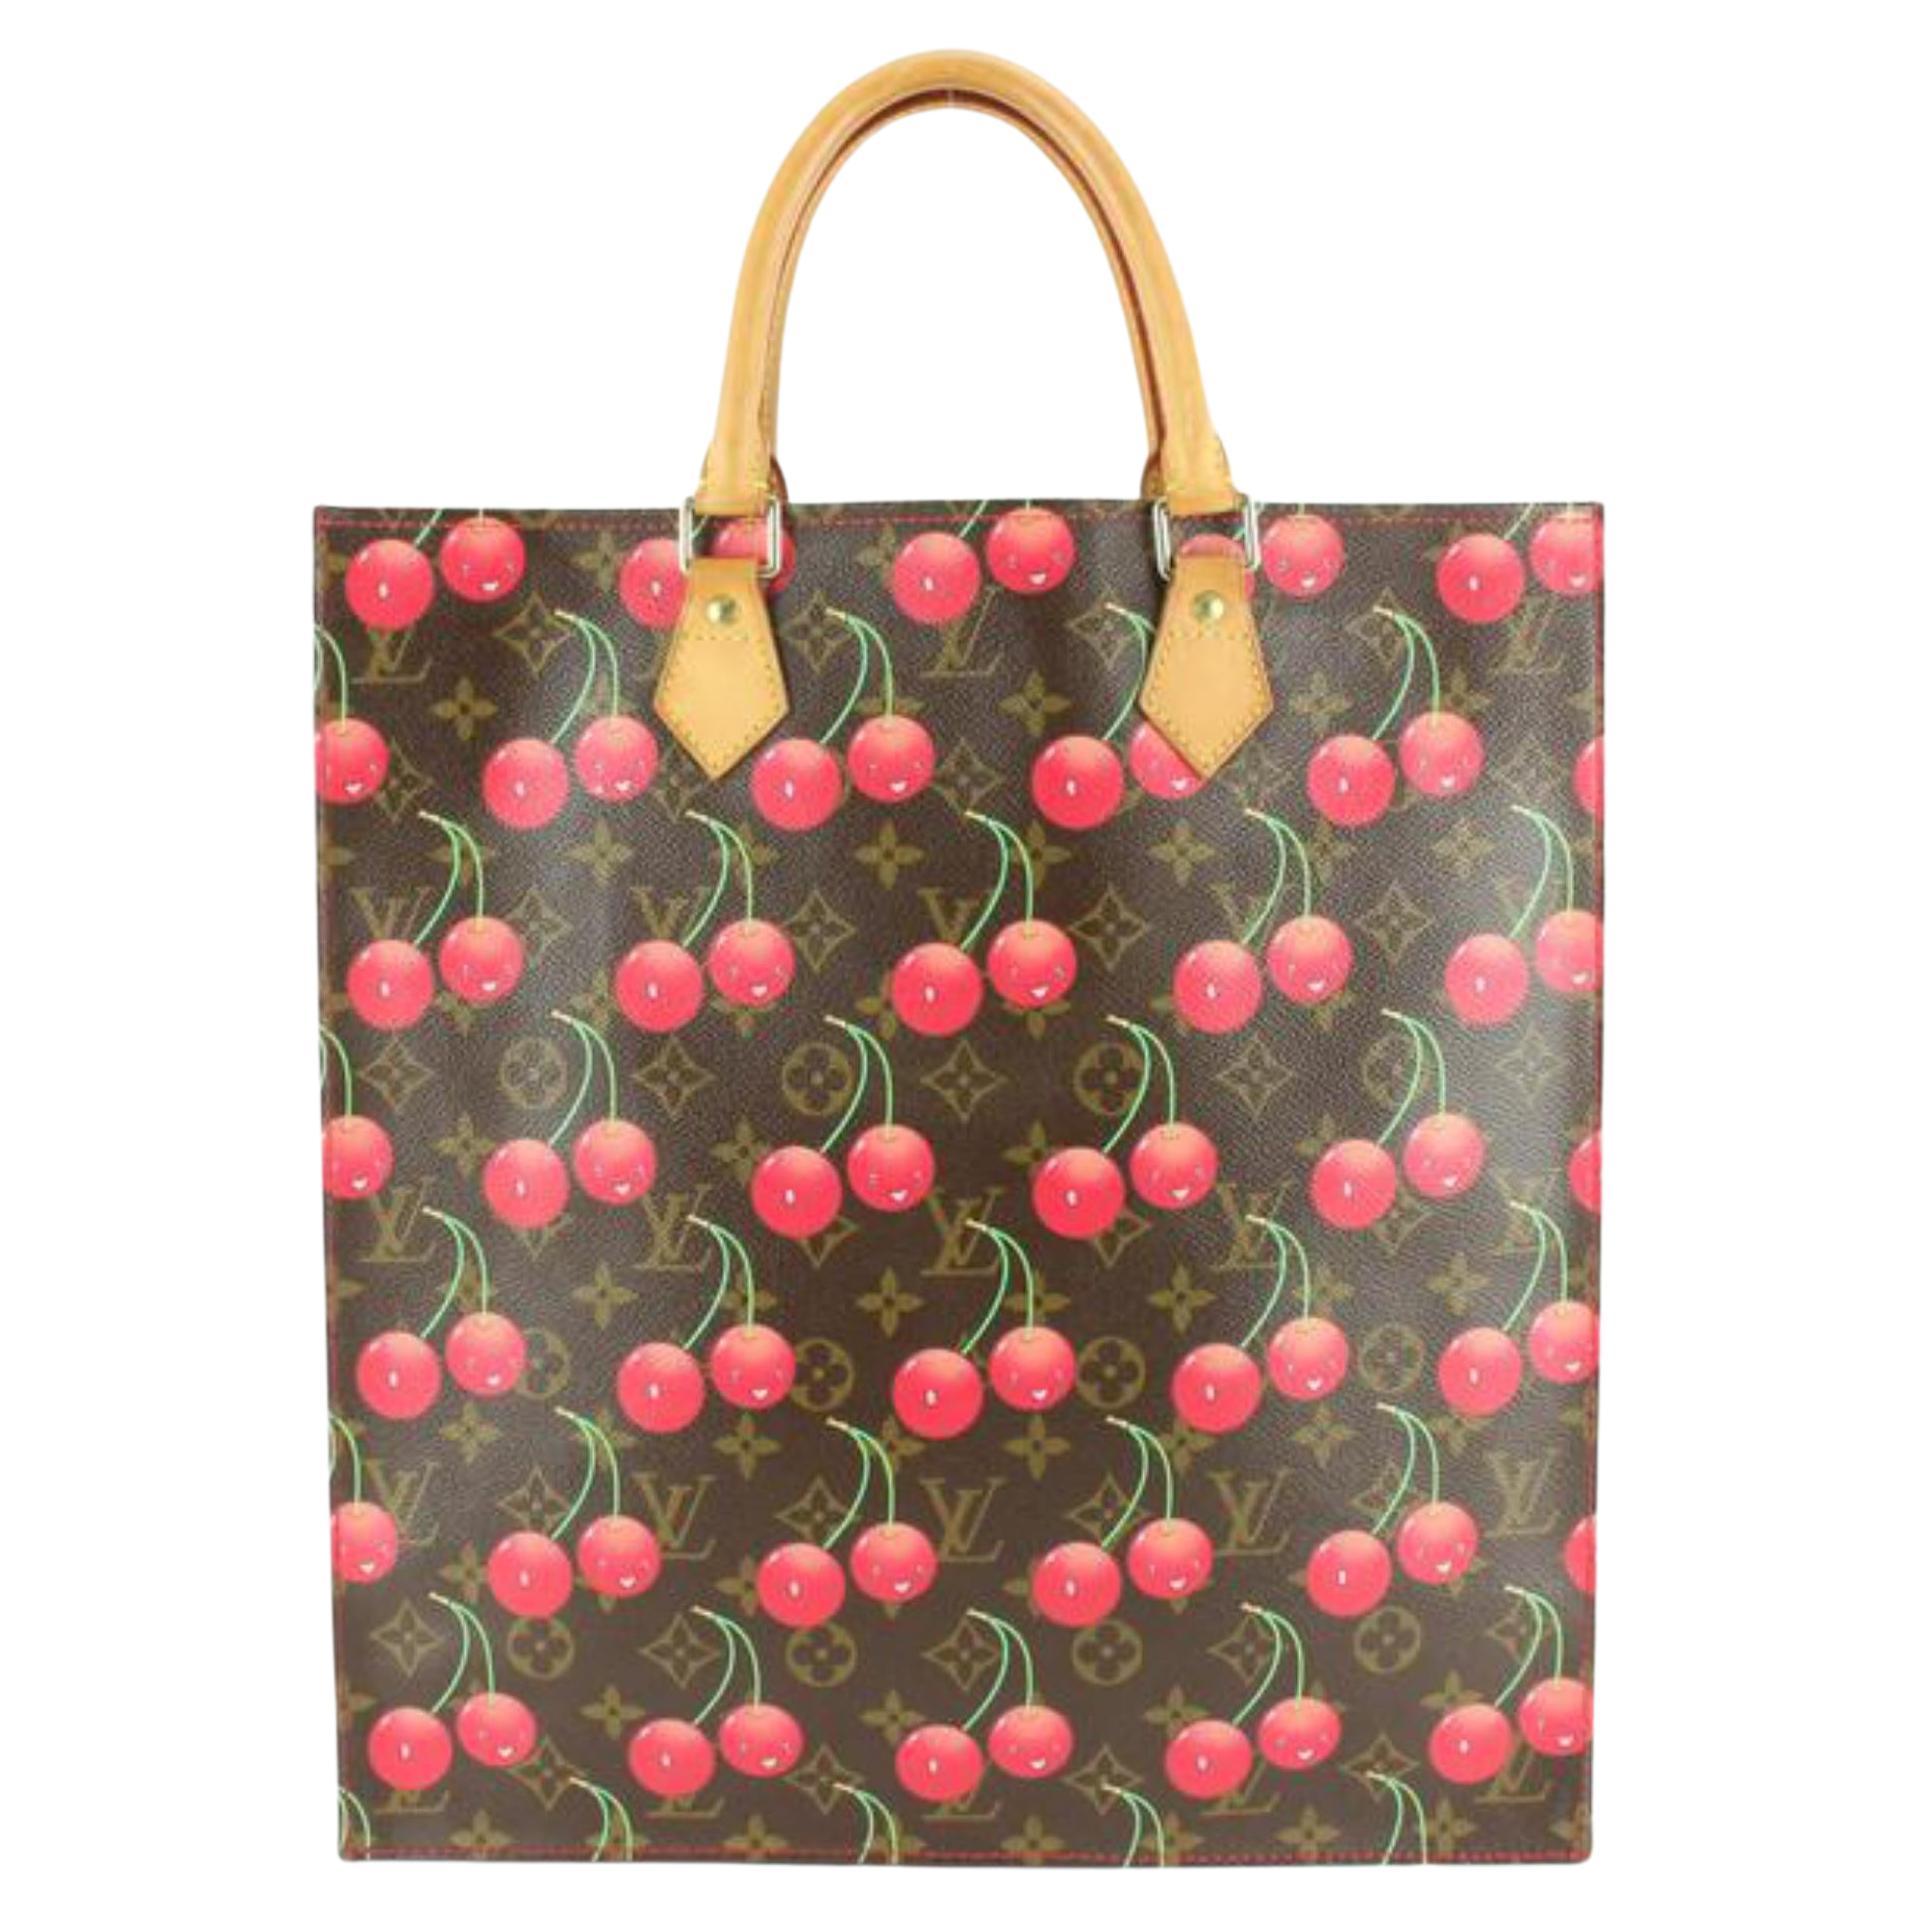 Louis Vuitton Murakami Cerises Cherry Monogram Cherries Speedy 25 33lk824s  at 1stDibs